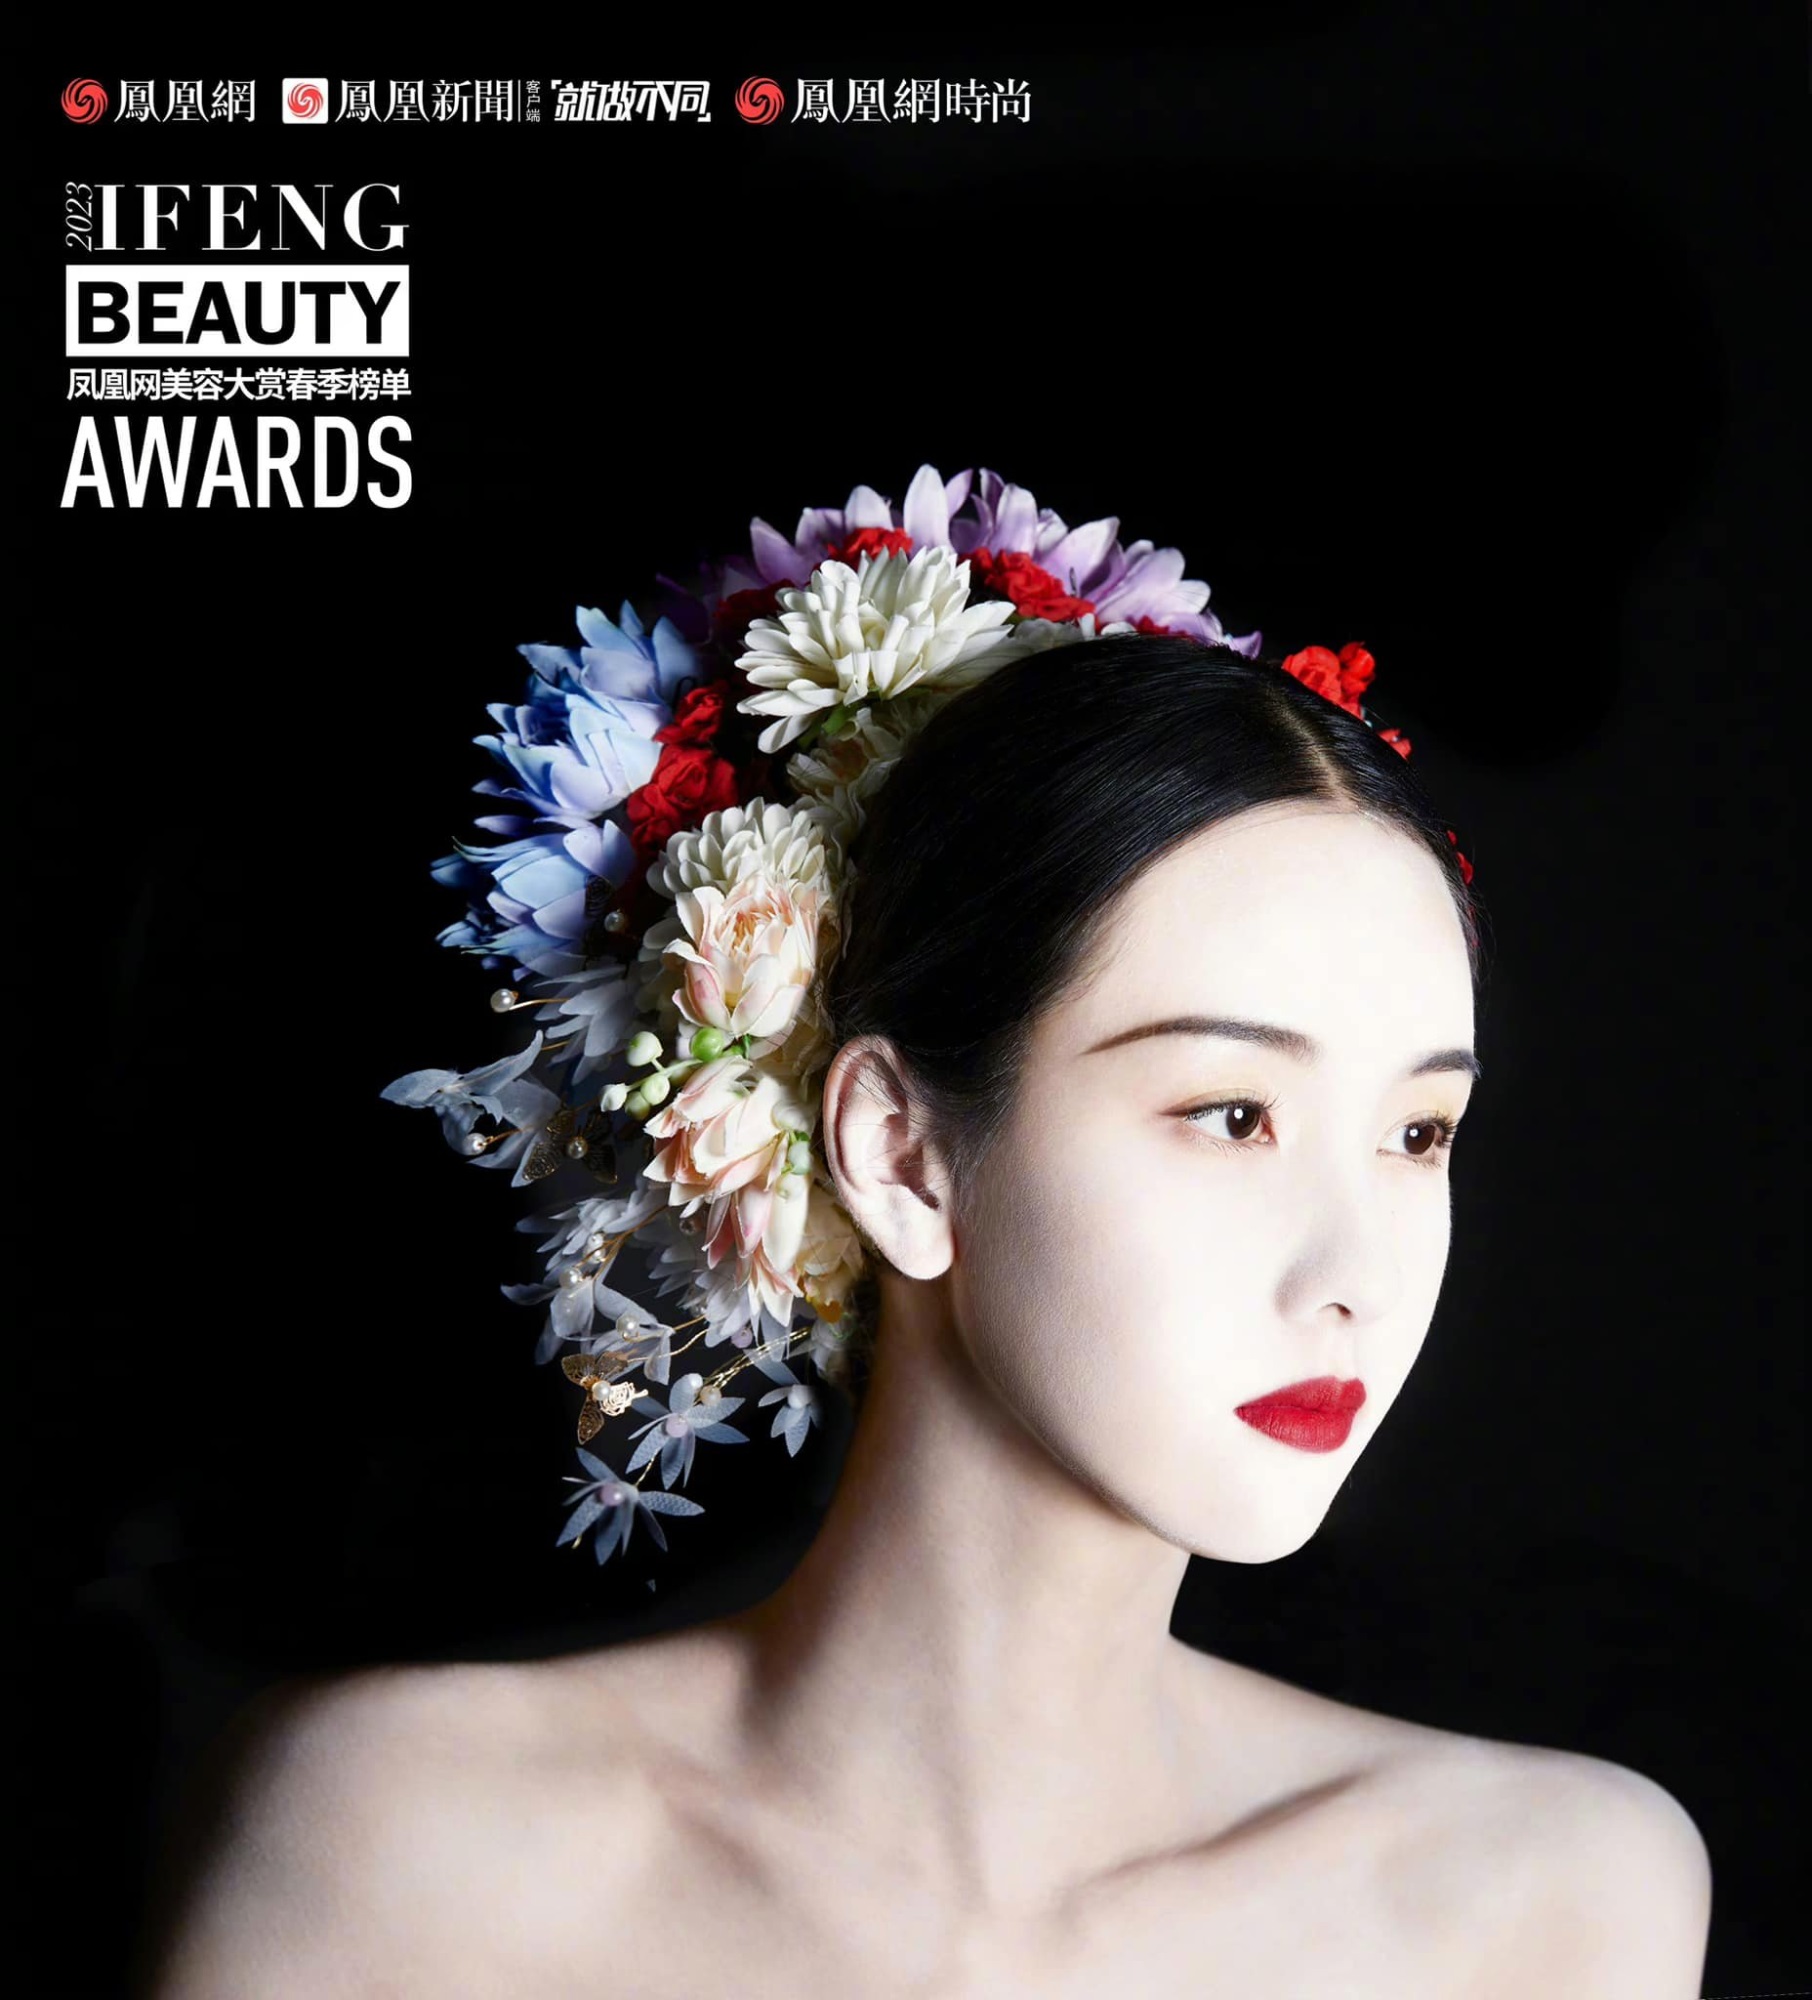 Trần Đô Linh trở thành đại sứ mùa xuân của tạp chí Ifeng Beauty Awards, xinh đẹp 'động lòng người' nhưng không bằng 'đàn chị' Triệu Lệ Dĩnh ở một điểm - Ảnh 5